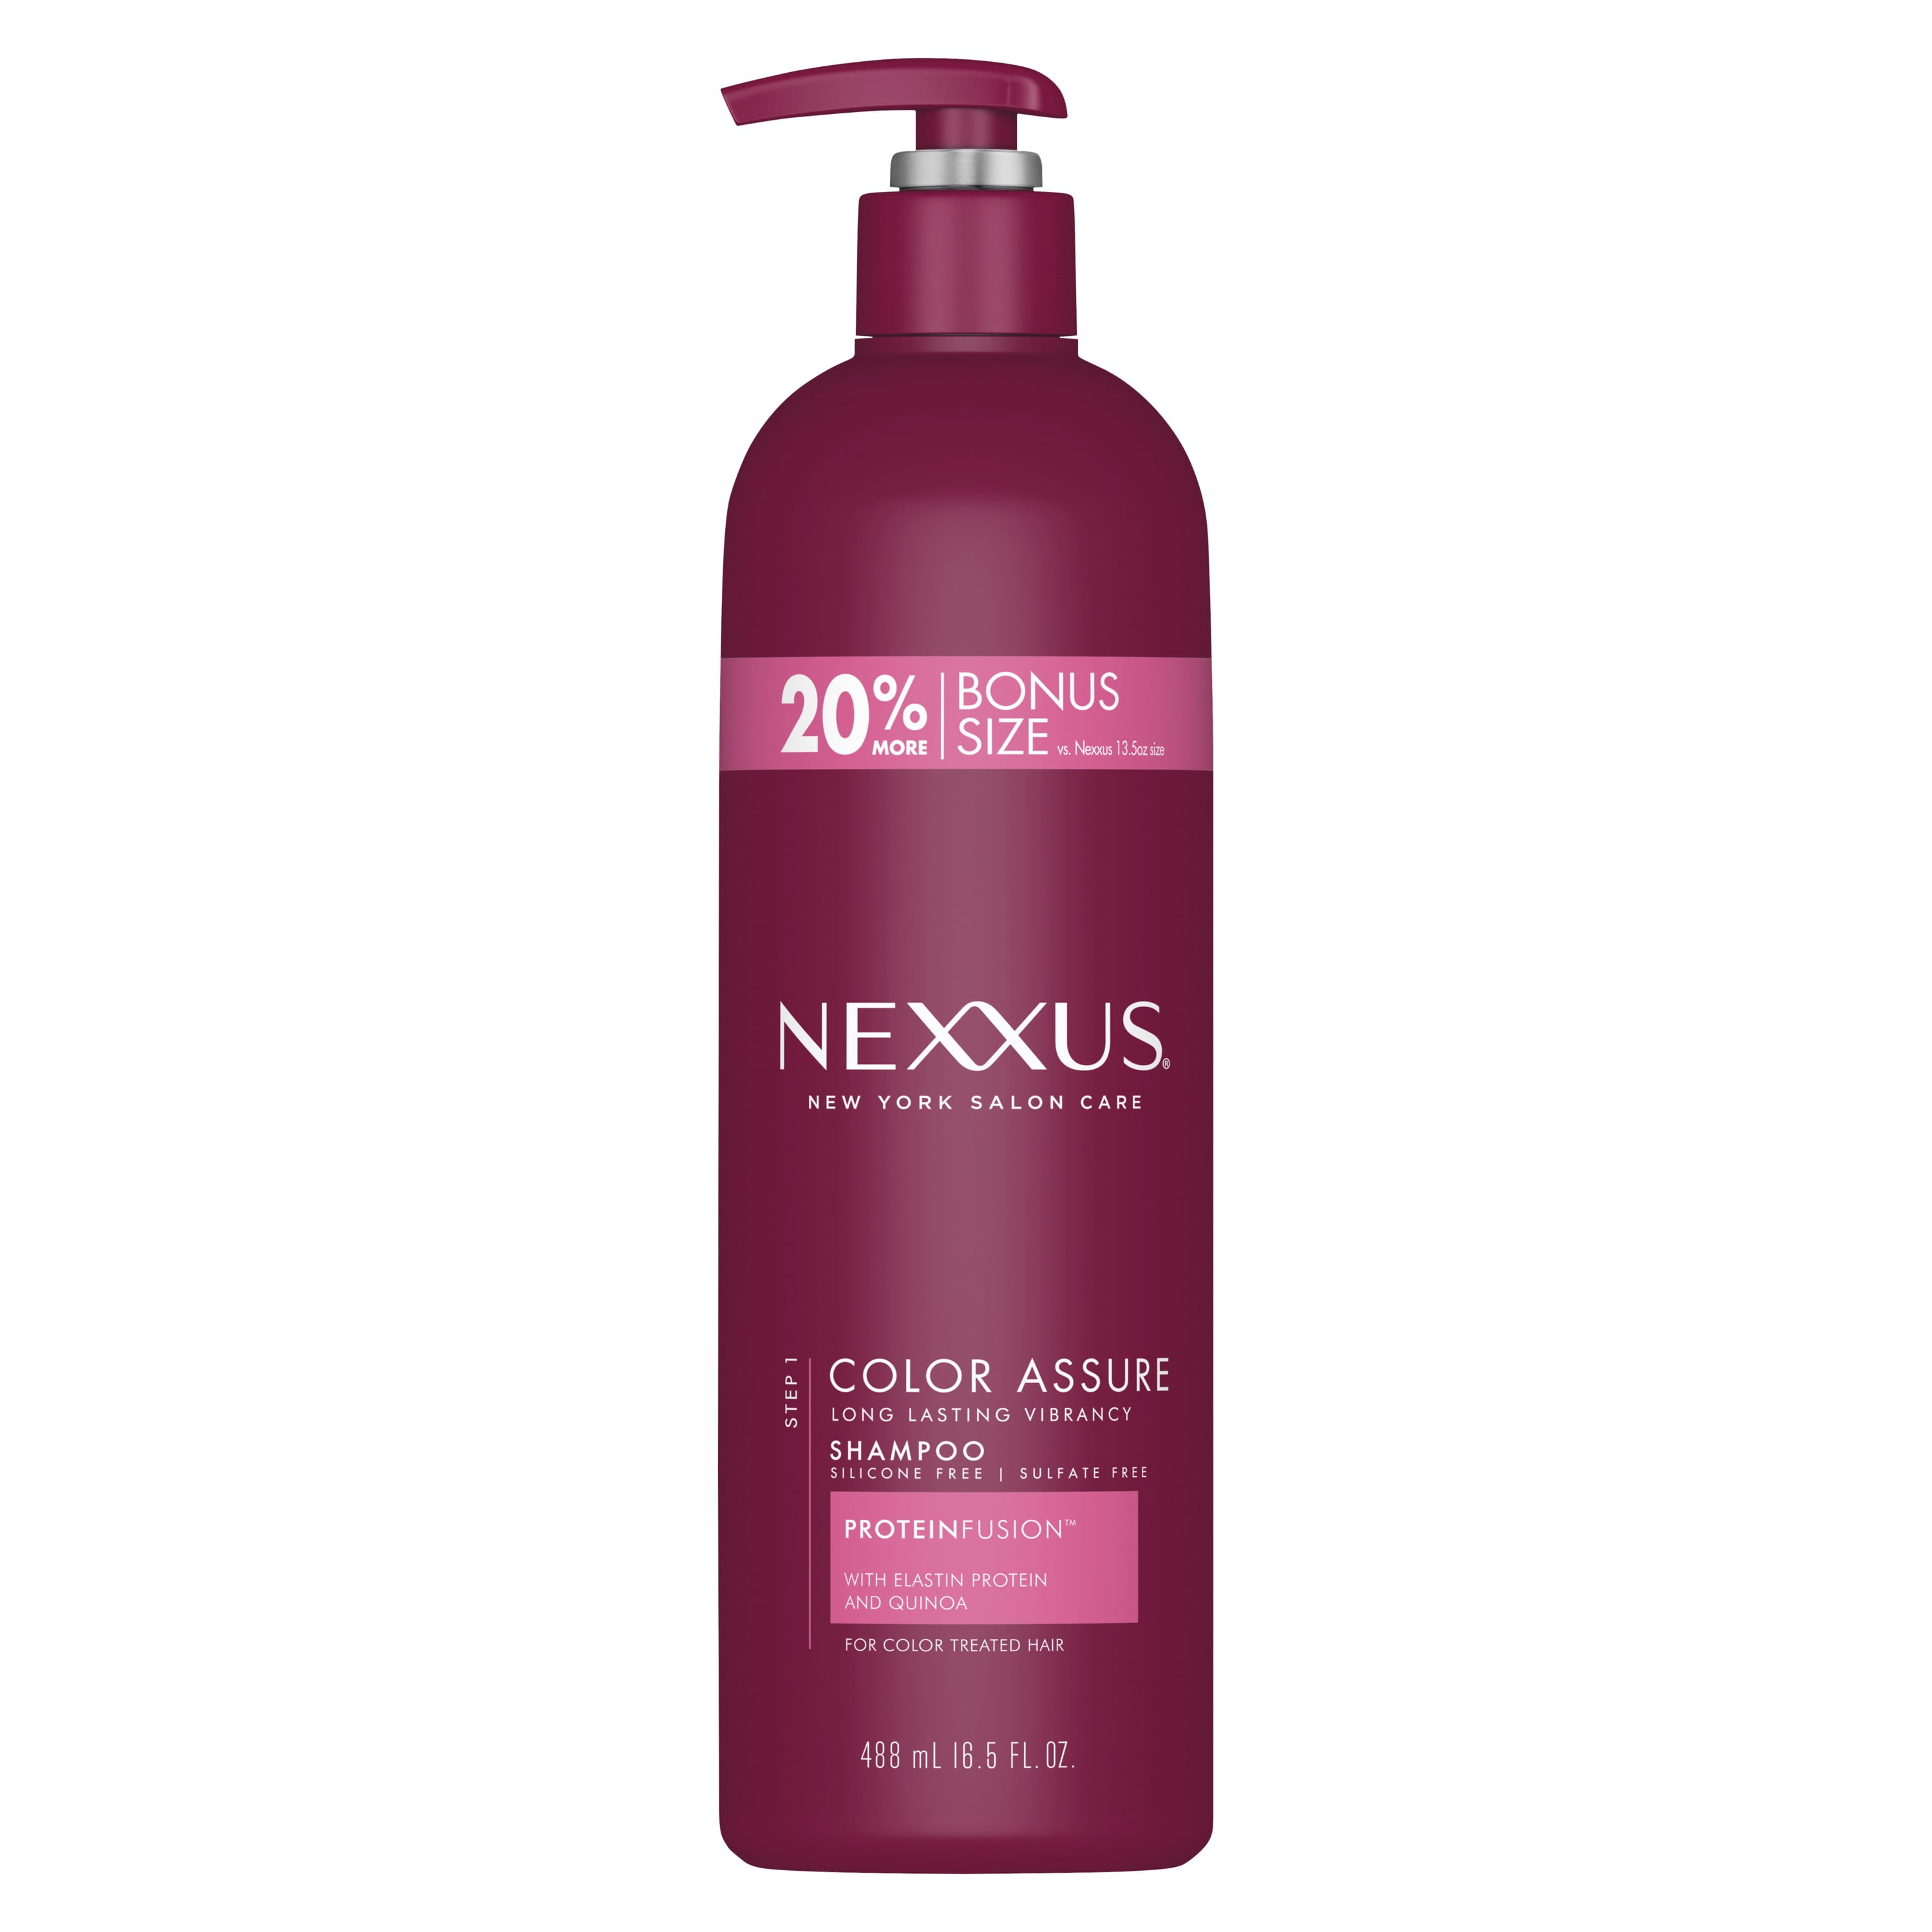 Nexxus Color Assure & Protection Daily Shampoo, 16.5 fl oz